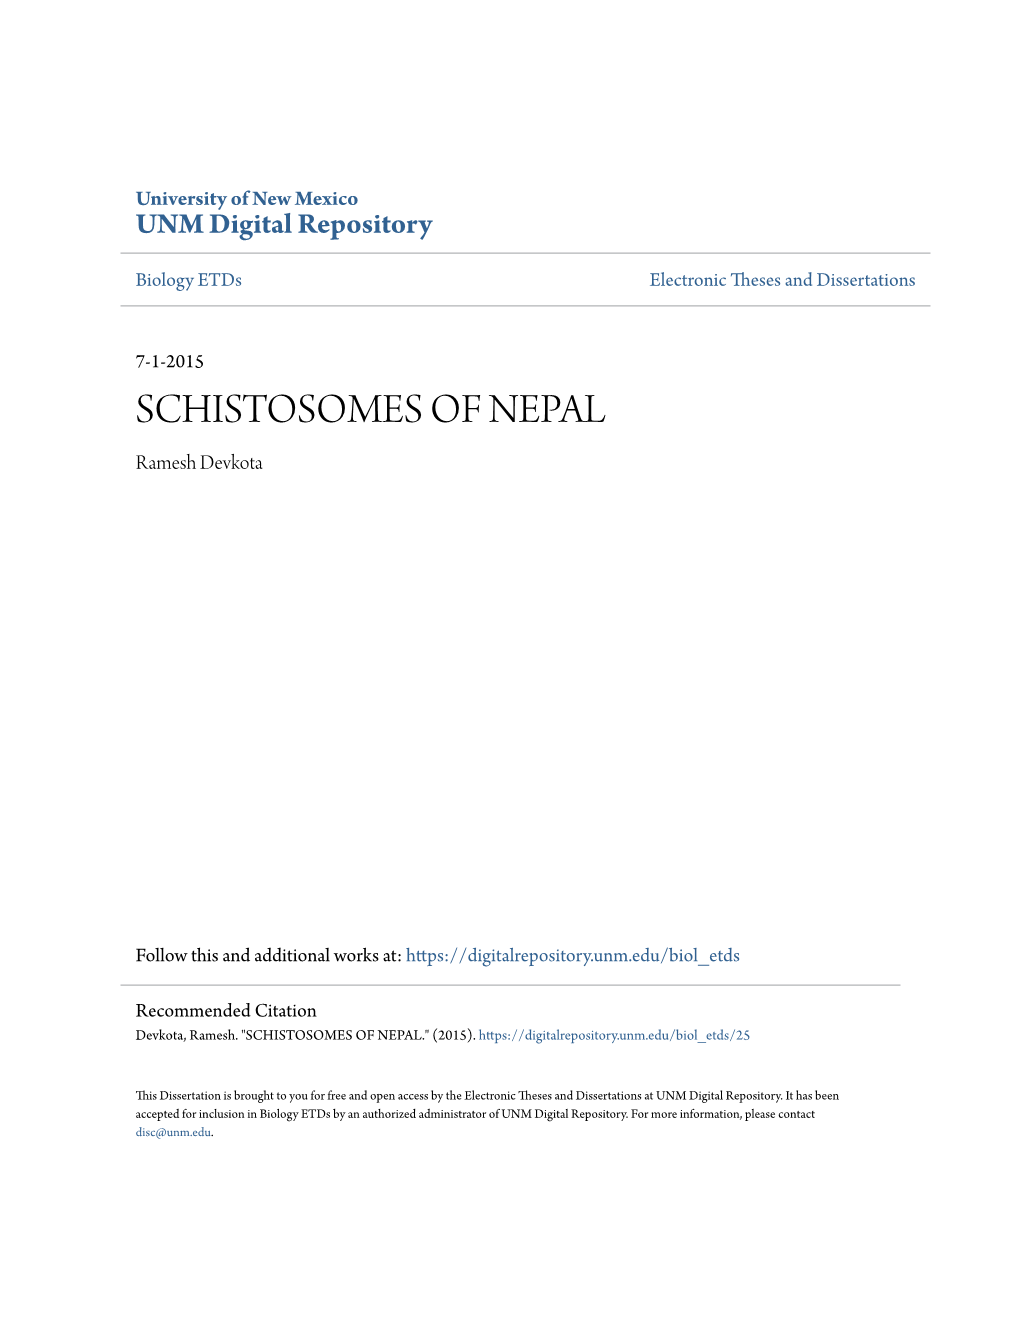 SCHISTOSOMES of NEPAL Ramesh Devkota